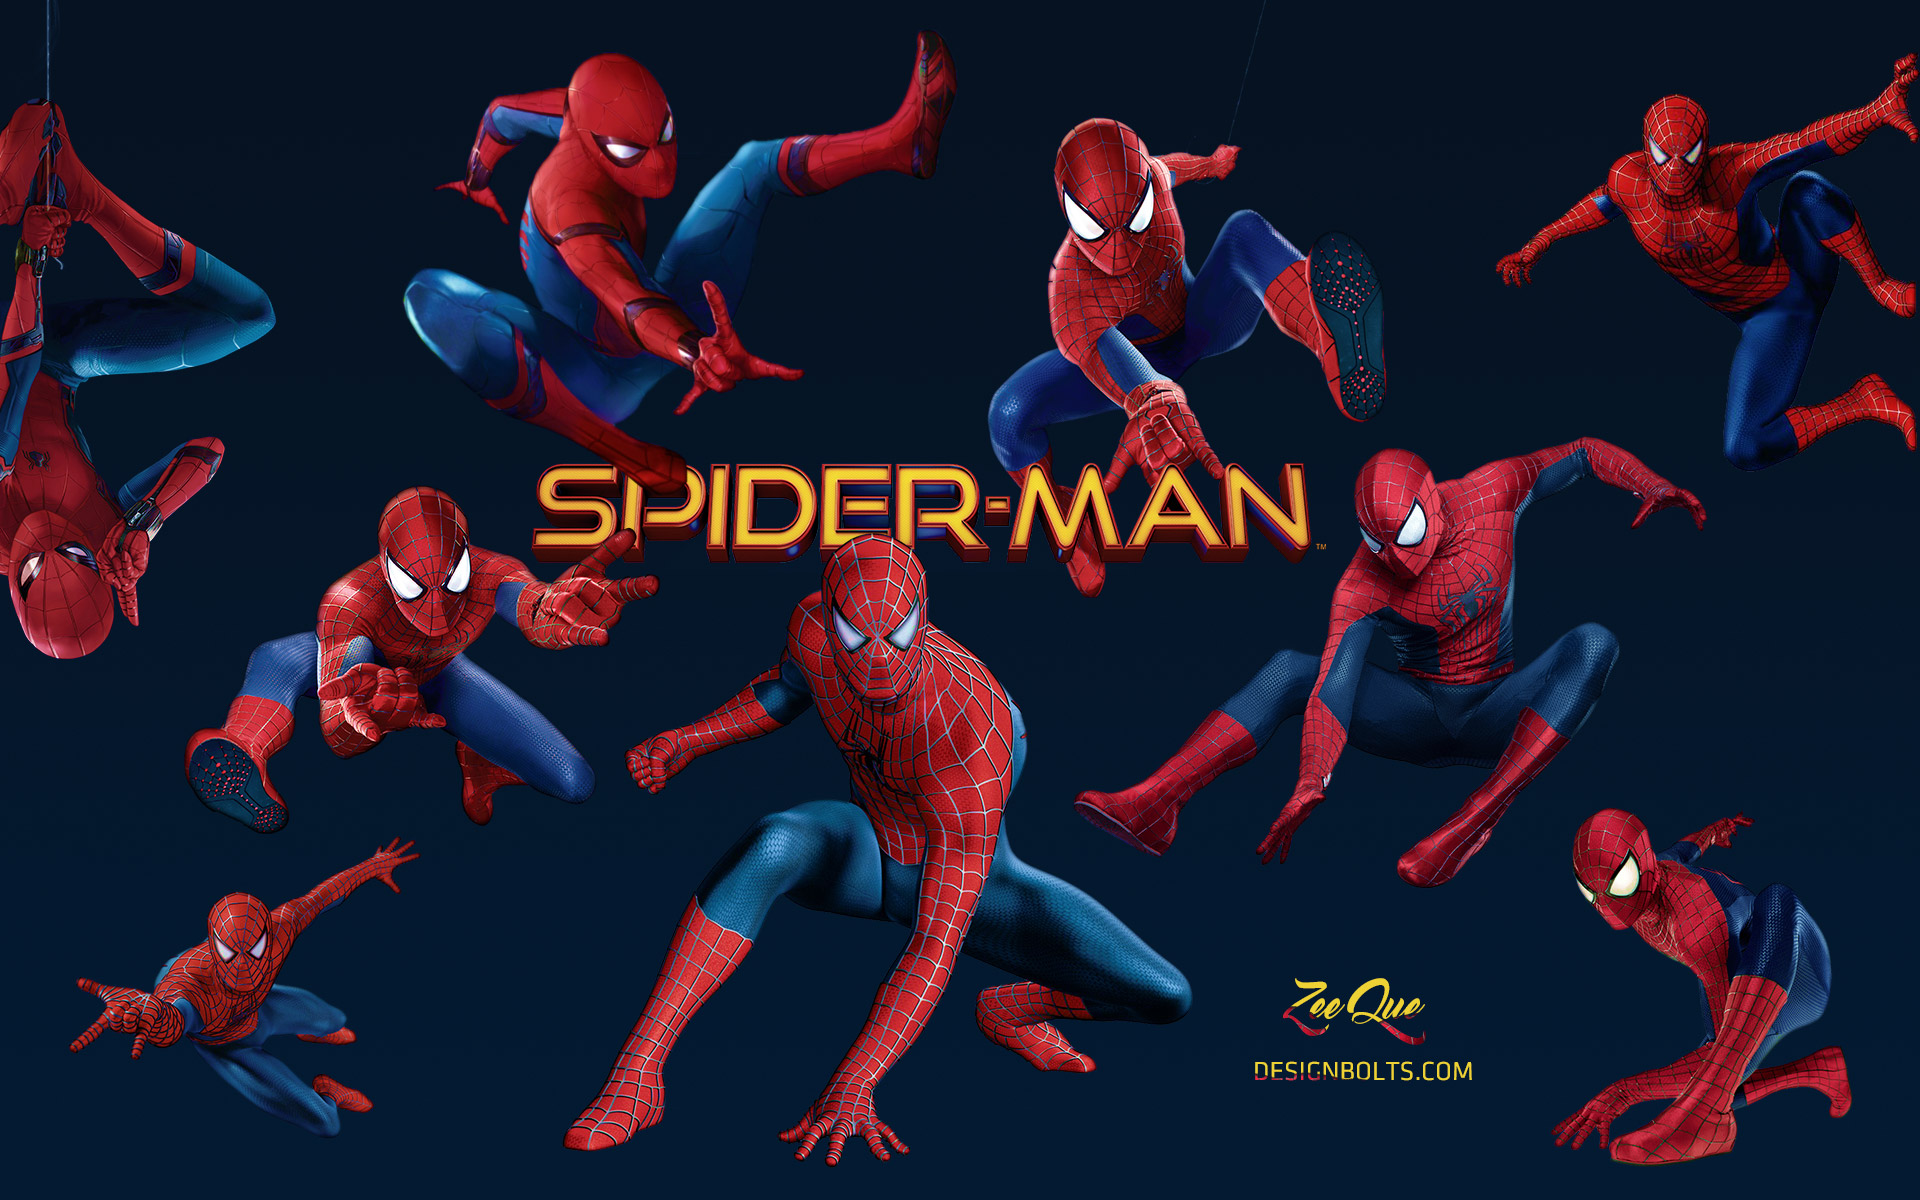 fond d'écran spiderman hd,homme araignée,super héros,personnage fictif,animation,équipe